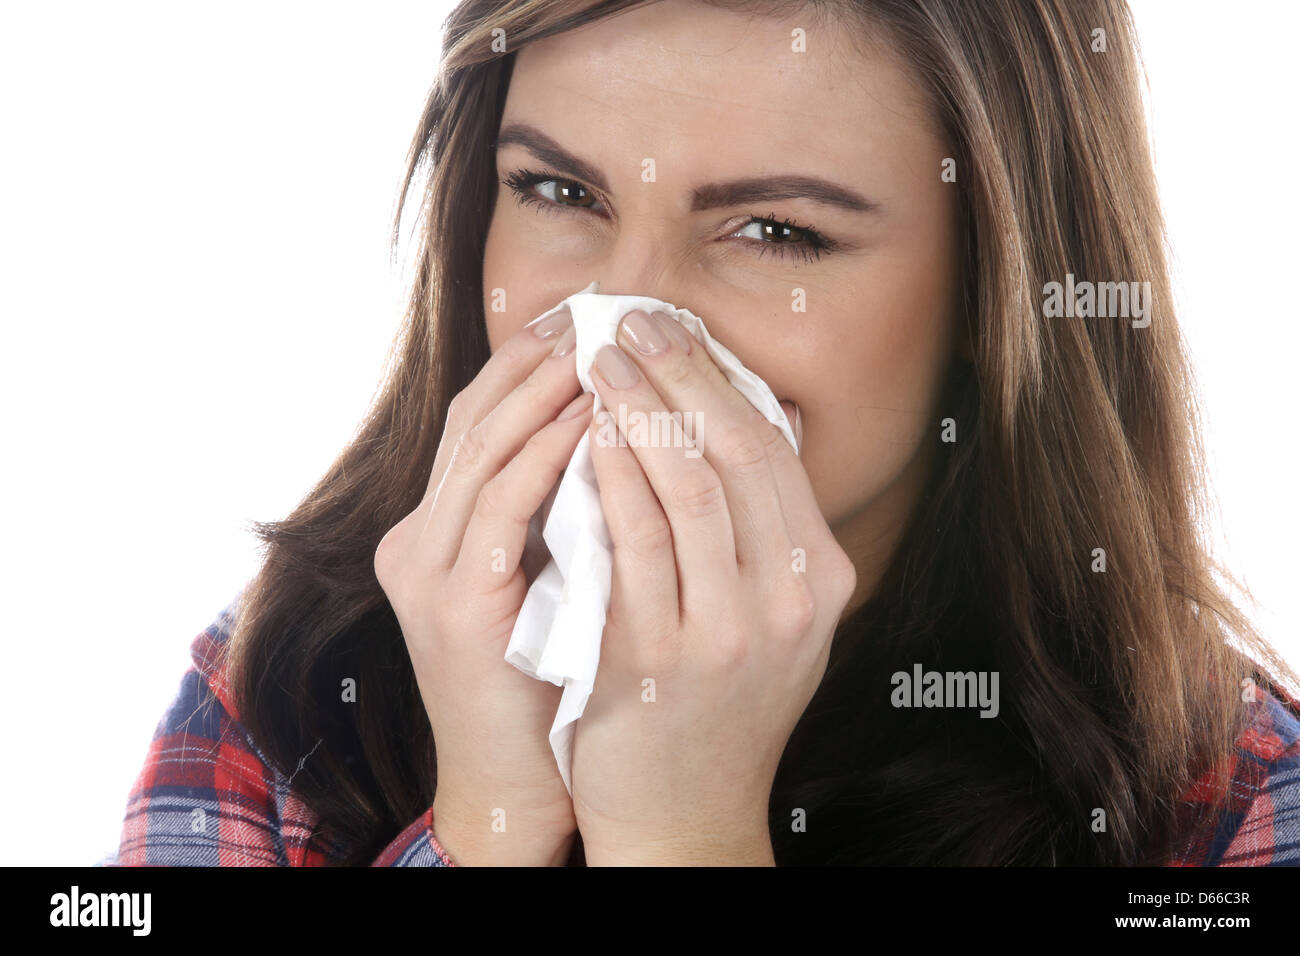 Mujer joven con temperatura y tos, mostrando síntomas de coronavirus o Covid-19 infección respiratoria contagiosa, aislada en blanco Foto de stock